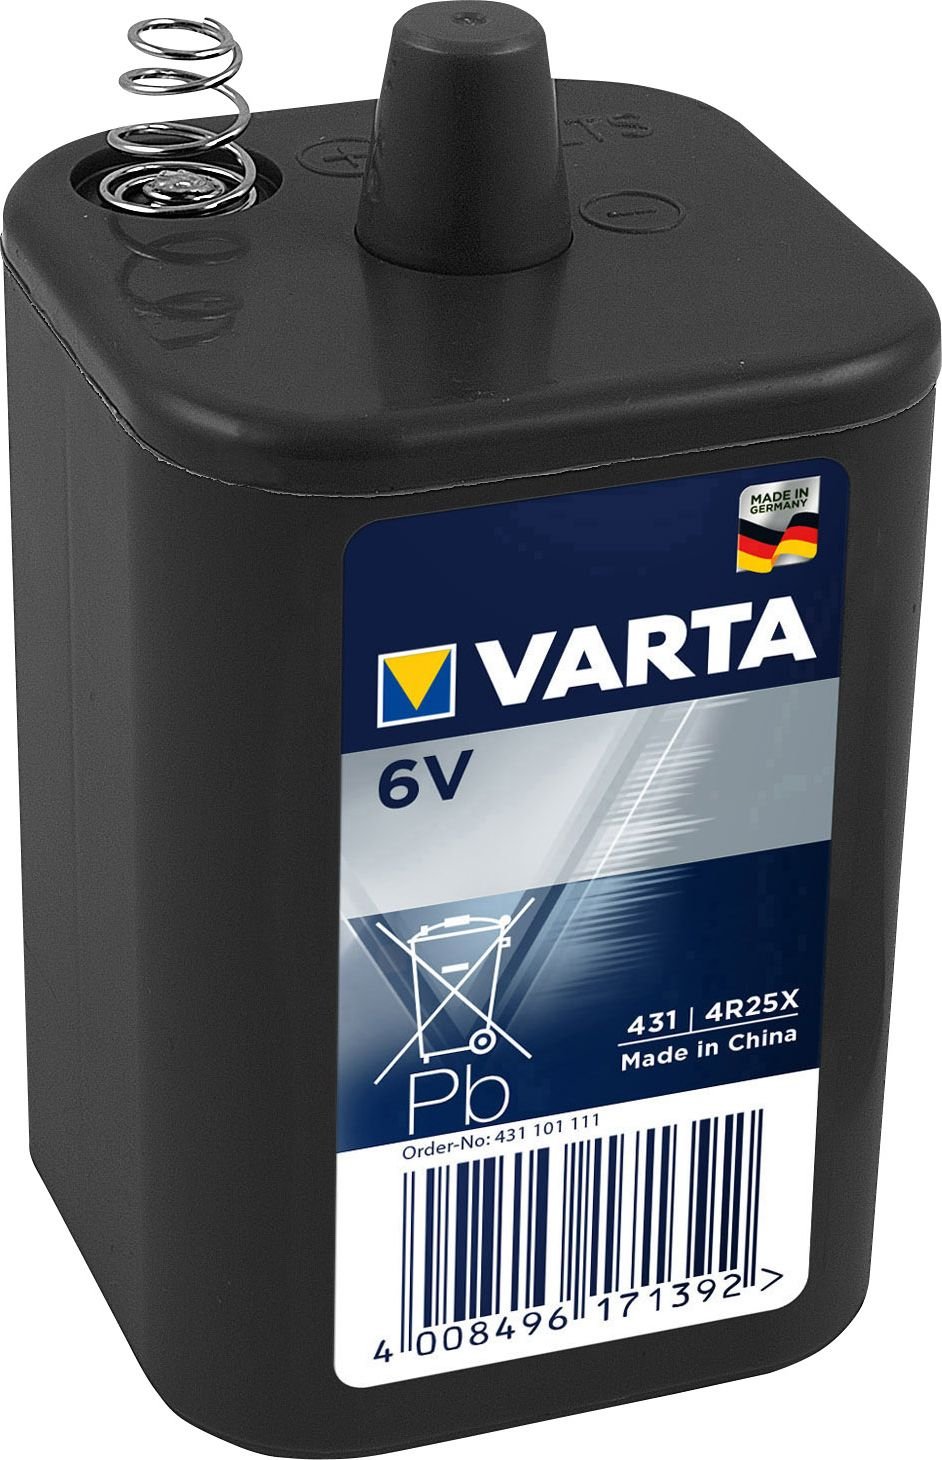 Baterie zinc carbon VARTA V431 4R25X 6V 8500mAh cu arc